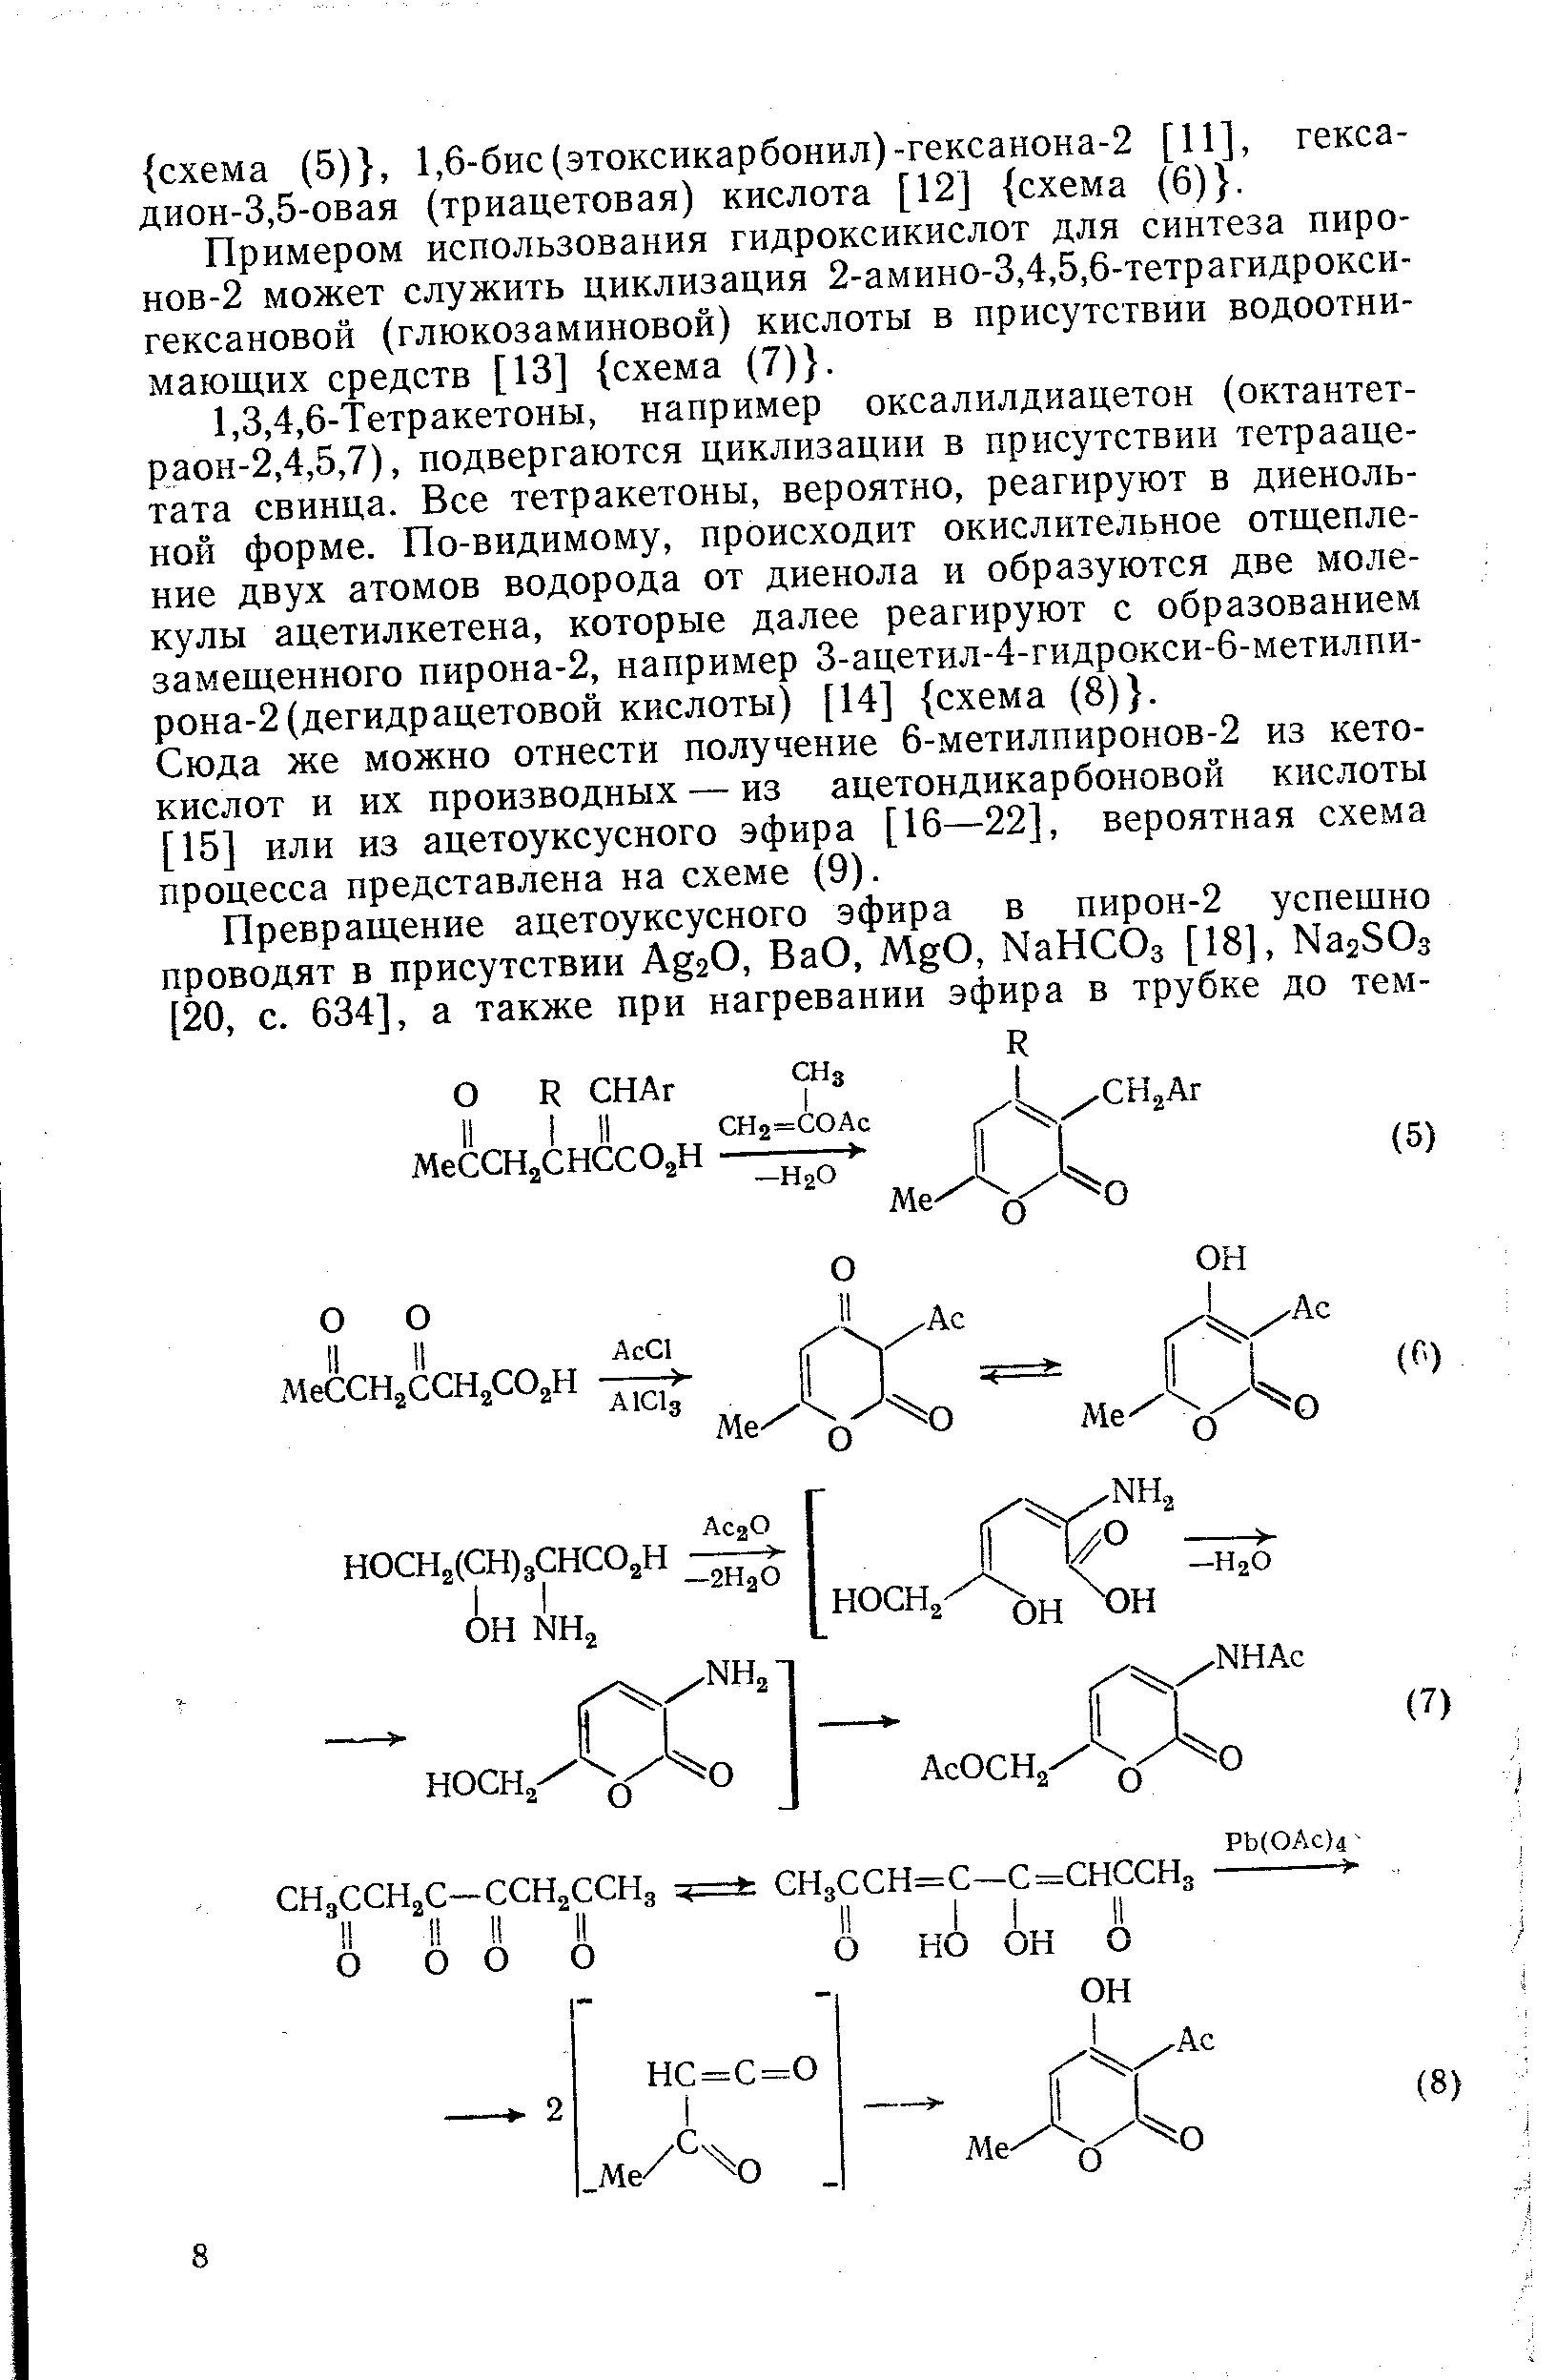 Примером использования гидроксикислот для синтеза пиронов-2 может служить циклизация 2-амино-3,4,5,6-тетрагидрокси-гексановой (глюкозаминовой) кислоты в присутствии водоотнимающих средств [13] схема (7) .